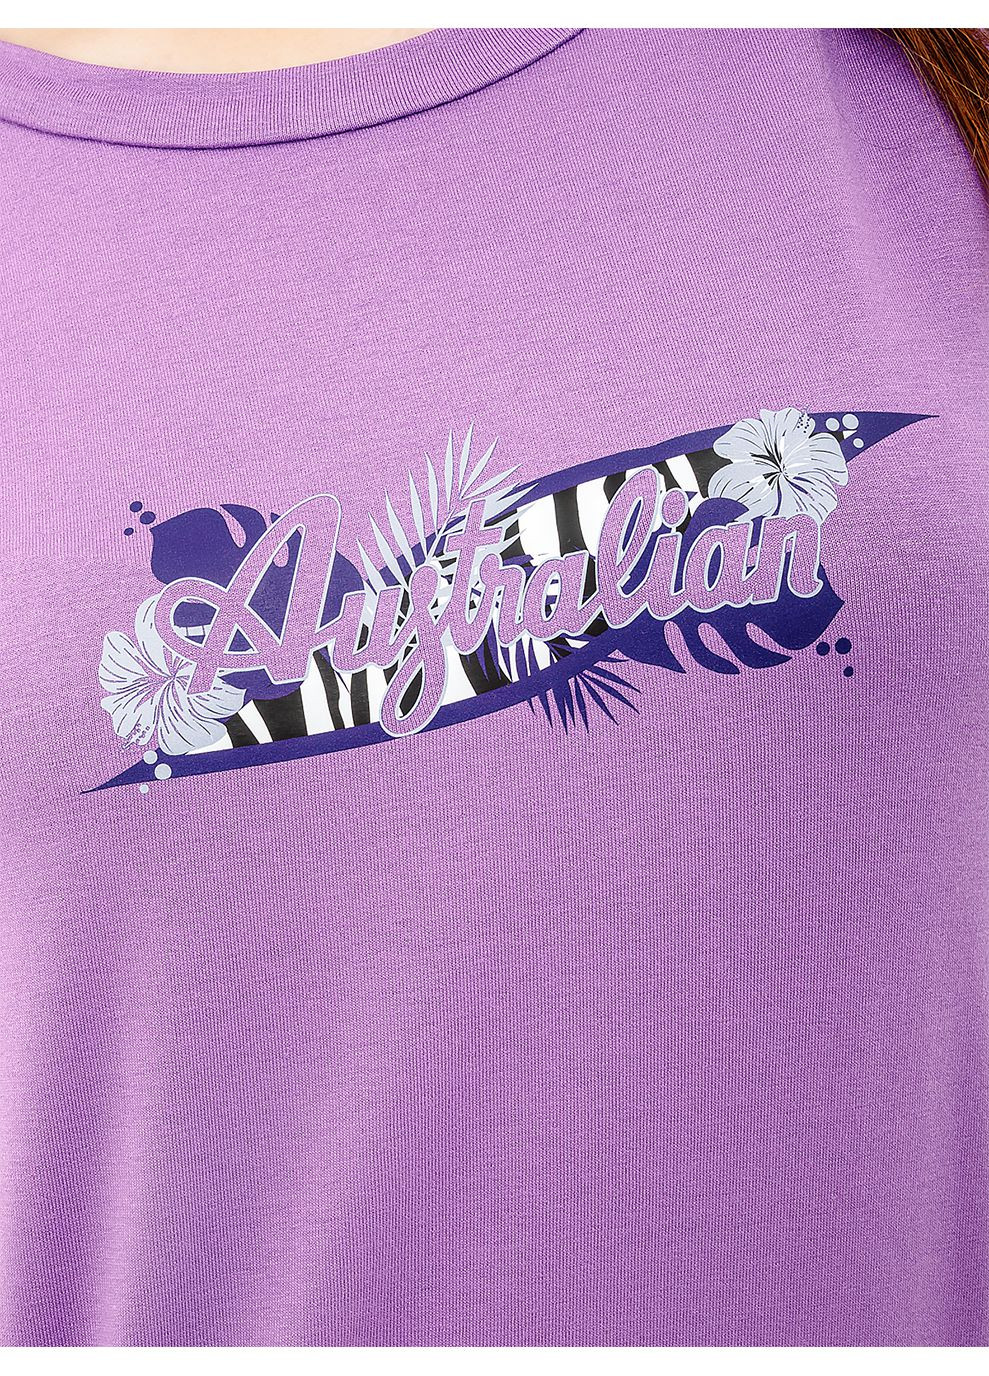 Лавандовая летняя женская футболка logo flowers tee jersey v лавандовый Australian